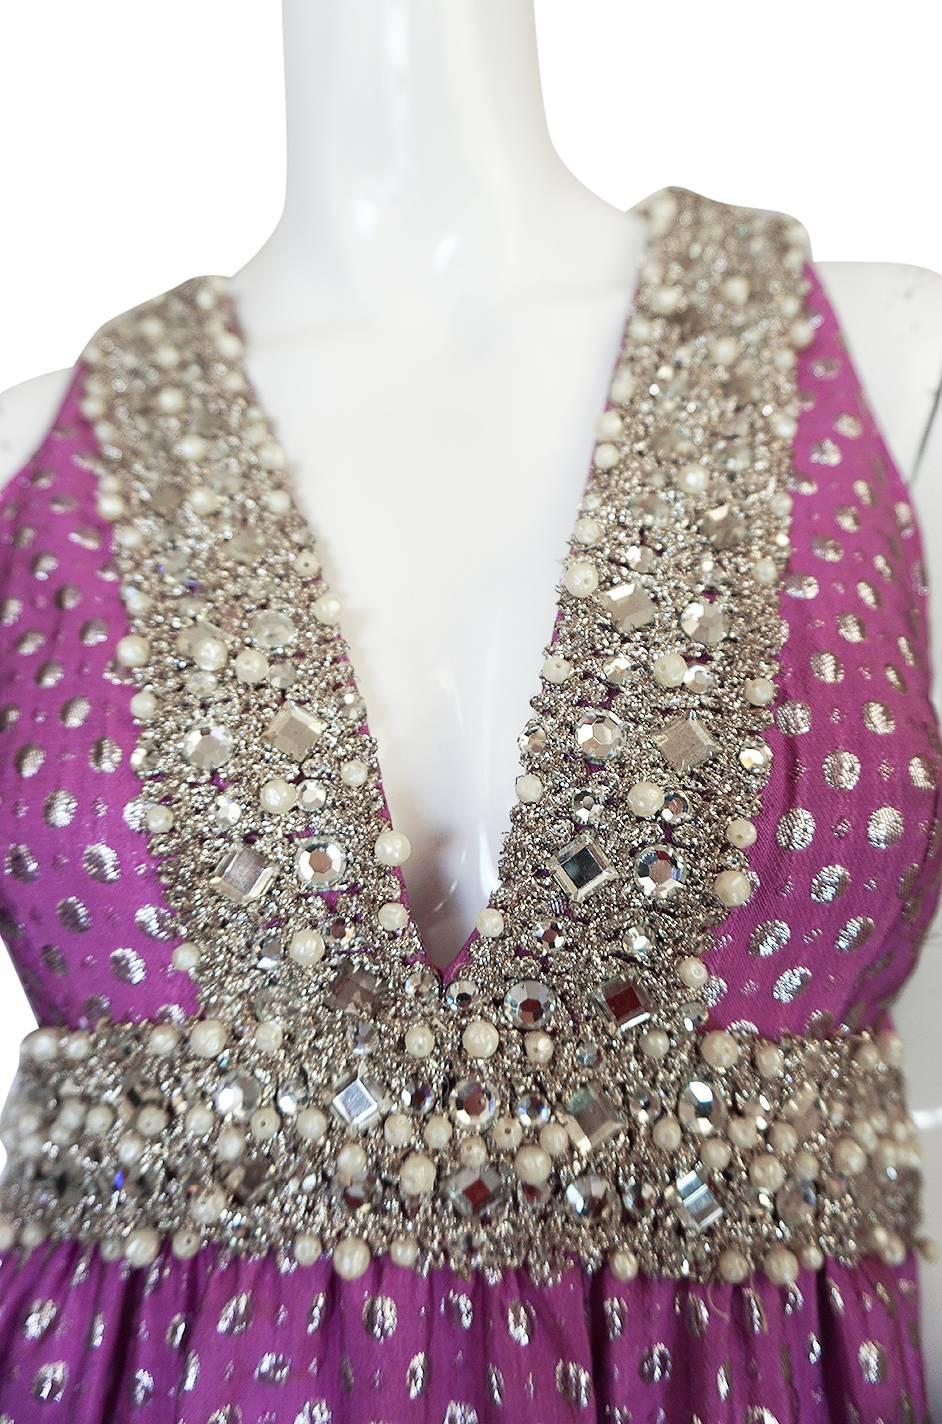 c1965-69 Lavender & Silver Beaded Oscar de la Renta Dress 2